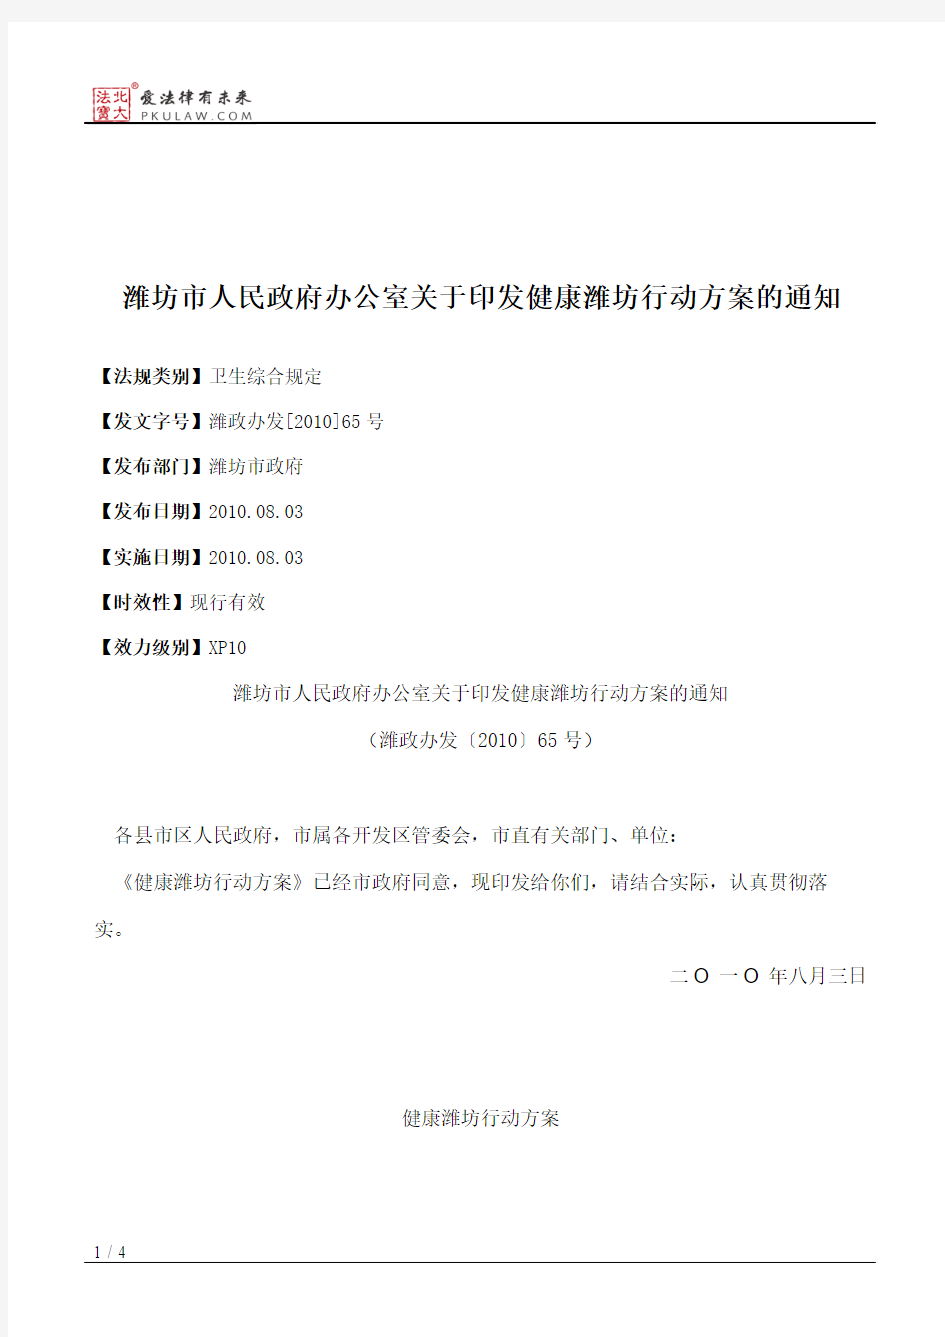 潍坊市人民政府办公室关于印发健康潍坊行动方案的通知